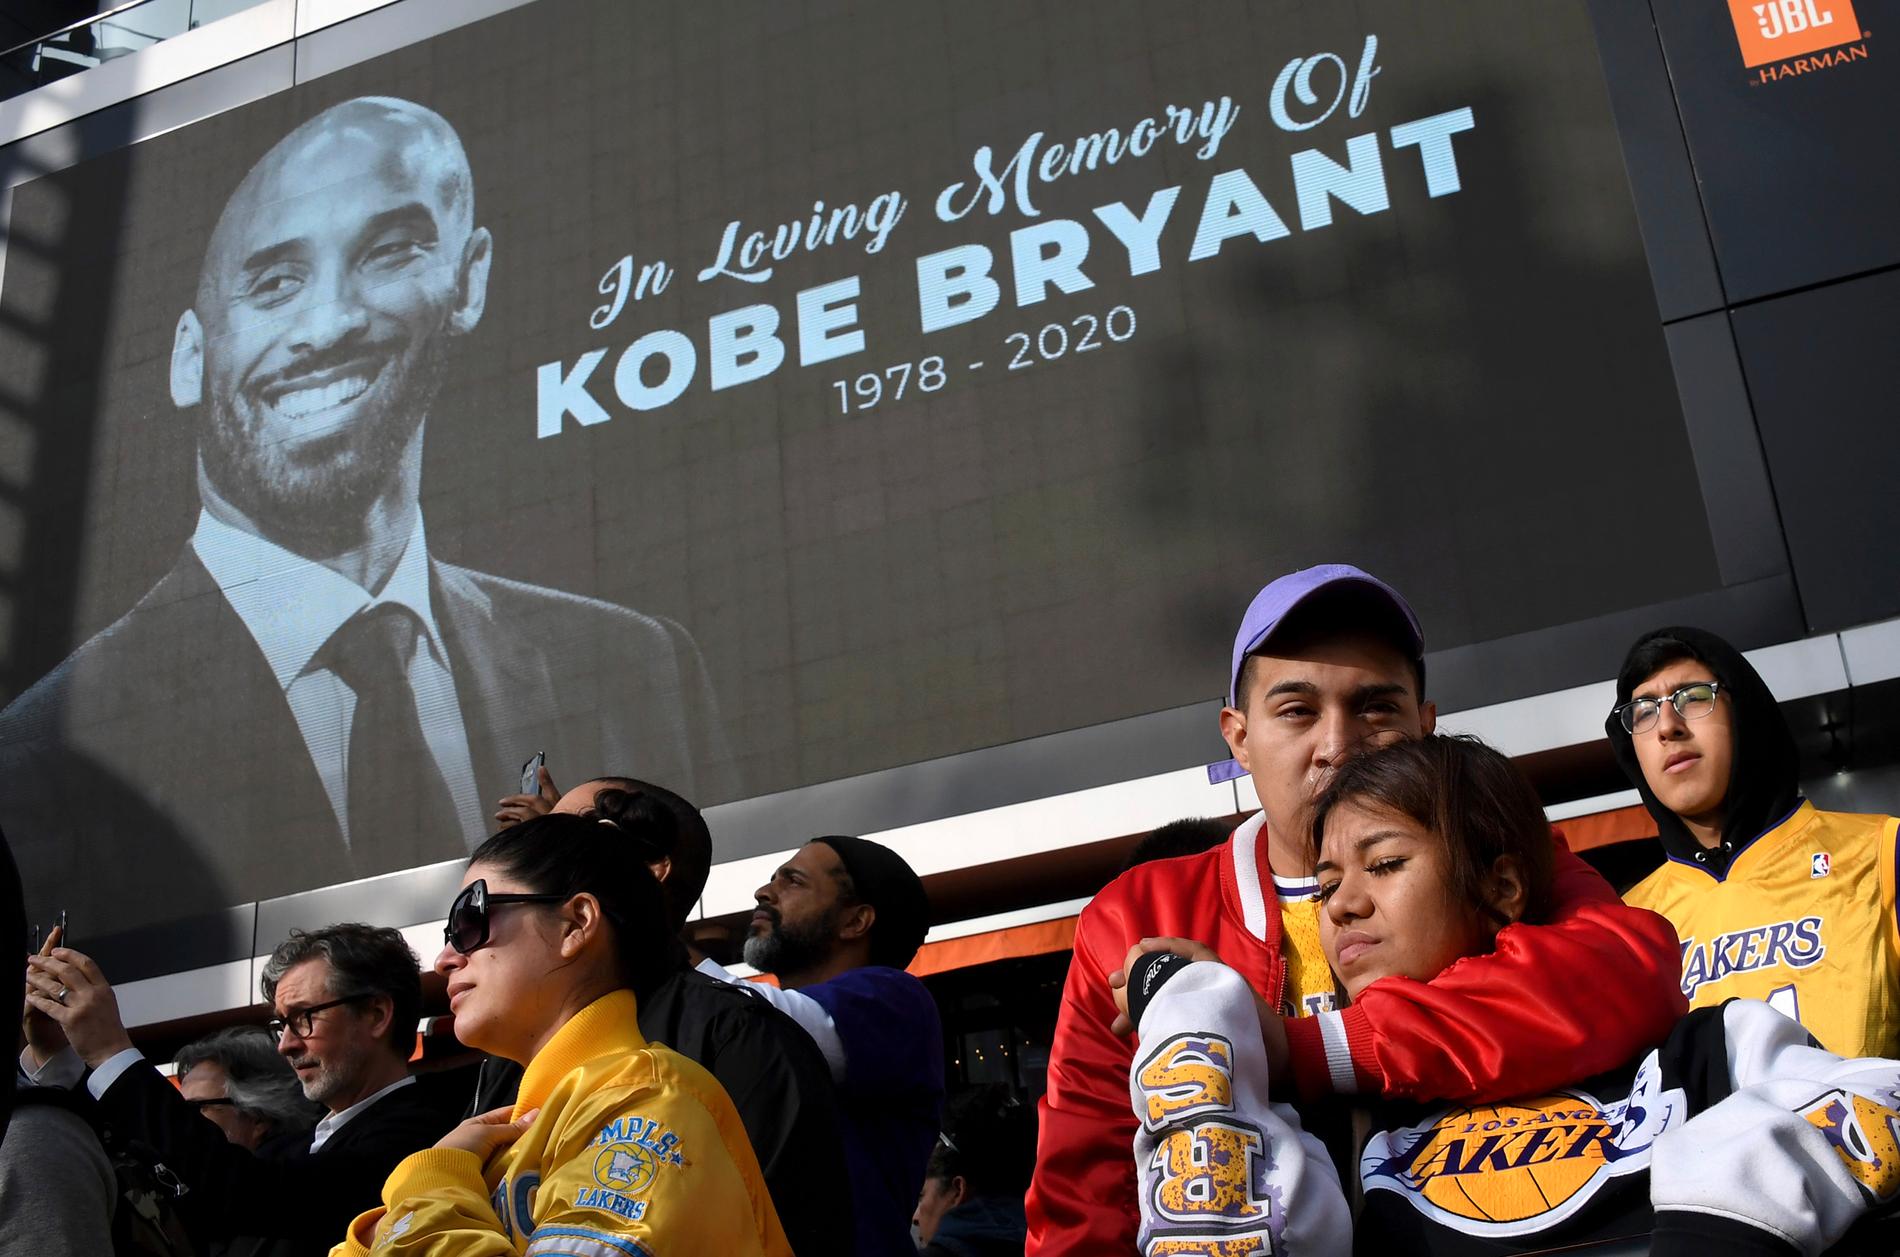 Många sörjer Kobe Bryant efter helikopterkraschen i Los Angeles utanför Staples Center, LA Lakers hemmaarena där Bryant tillbringade sin karriär.